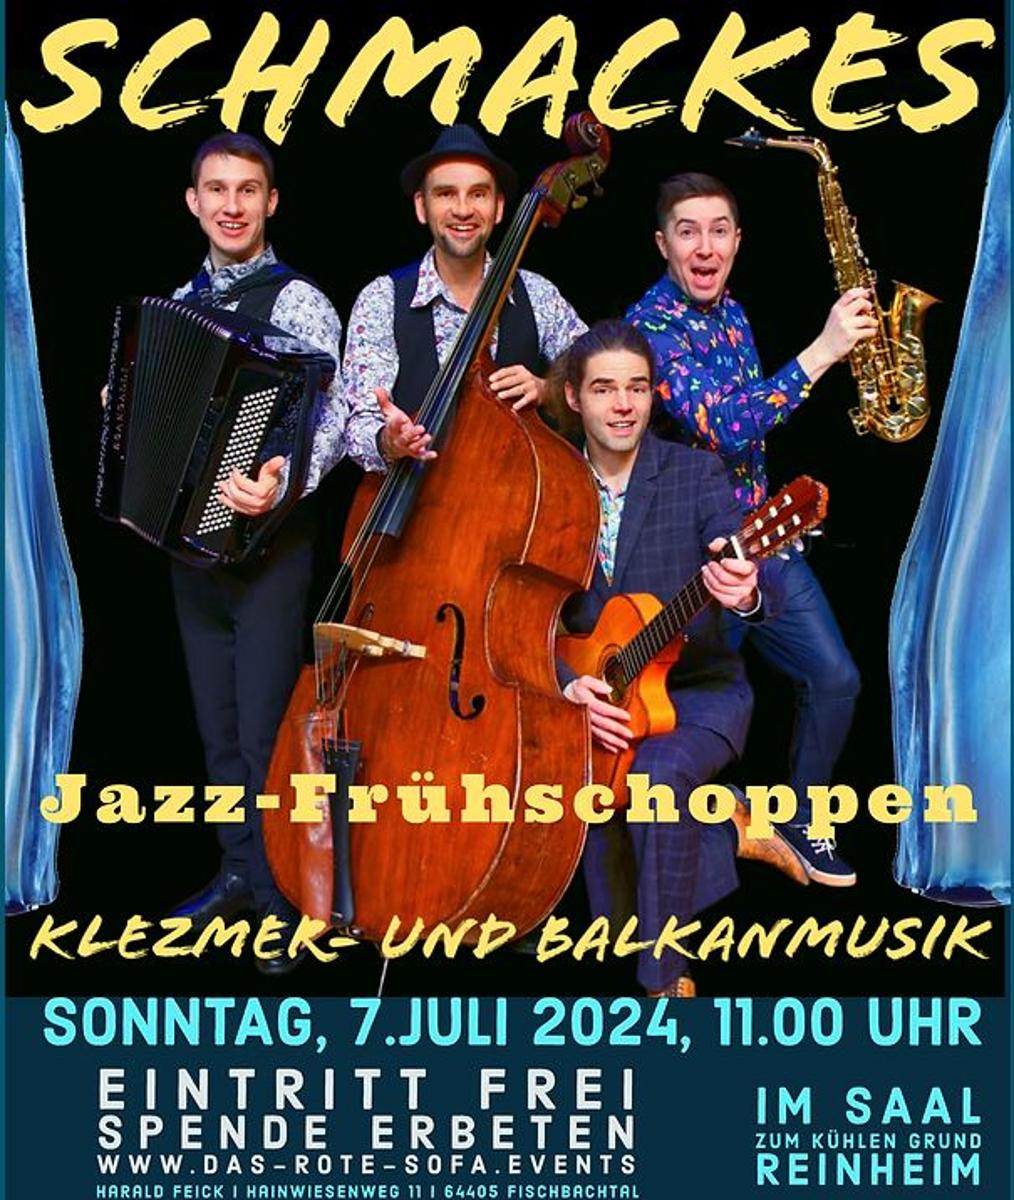 Unter dem Motto “the good old music - unplugged” ist Schmackes auf dem roten Sofa zu Gast. Ein JazzFrühschoppen mit Klezmer- und Balkanmusik gibt es am Sonntag, 7. Juli ab 11 Uhr im Saal Zum Kühlen Grund in Reinheim.